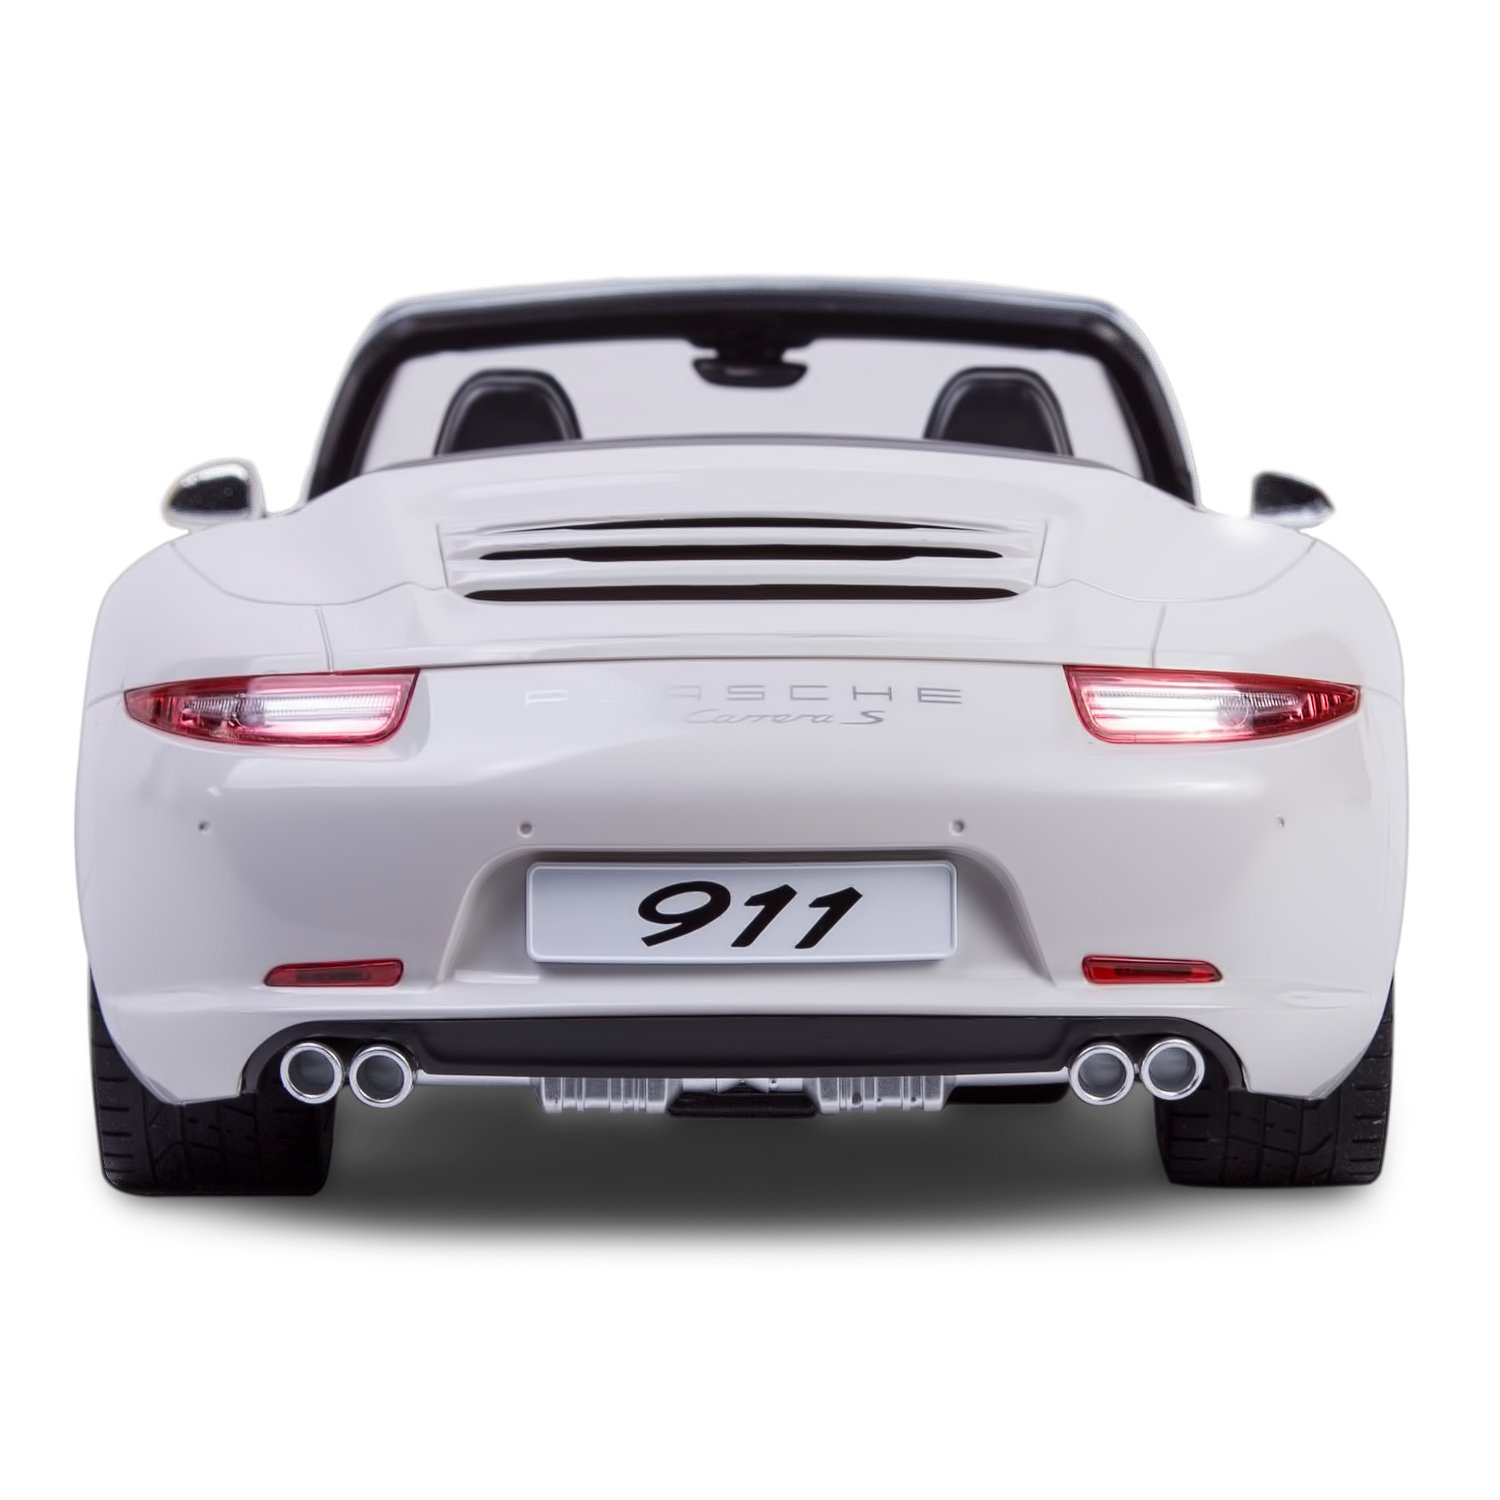 Машинка р/у Rastar Porsche 911 CarreraS 1:12 белая